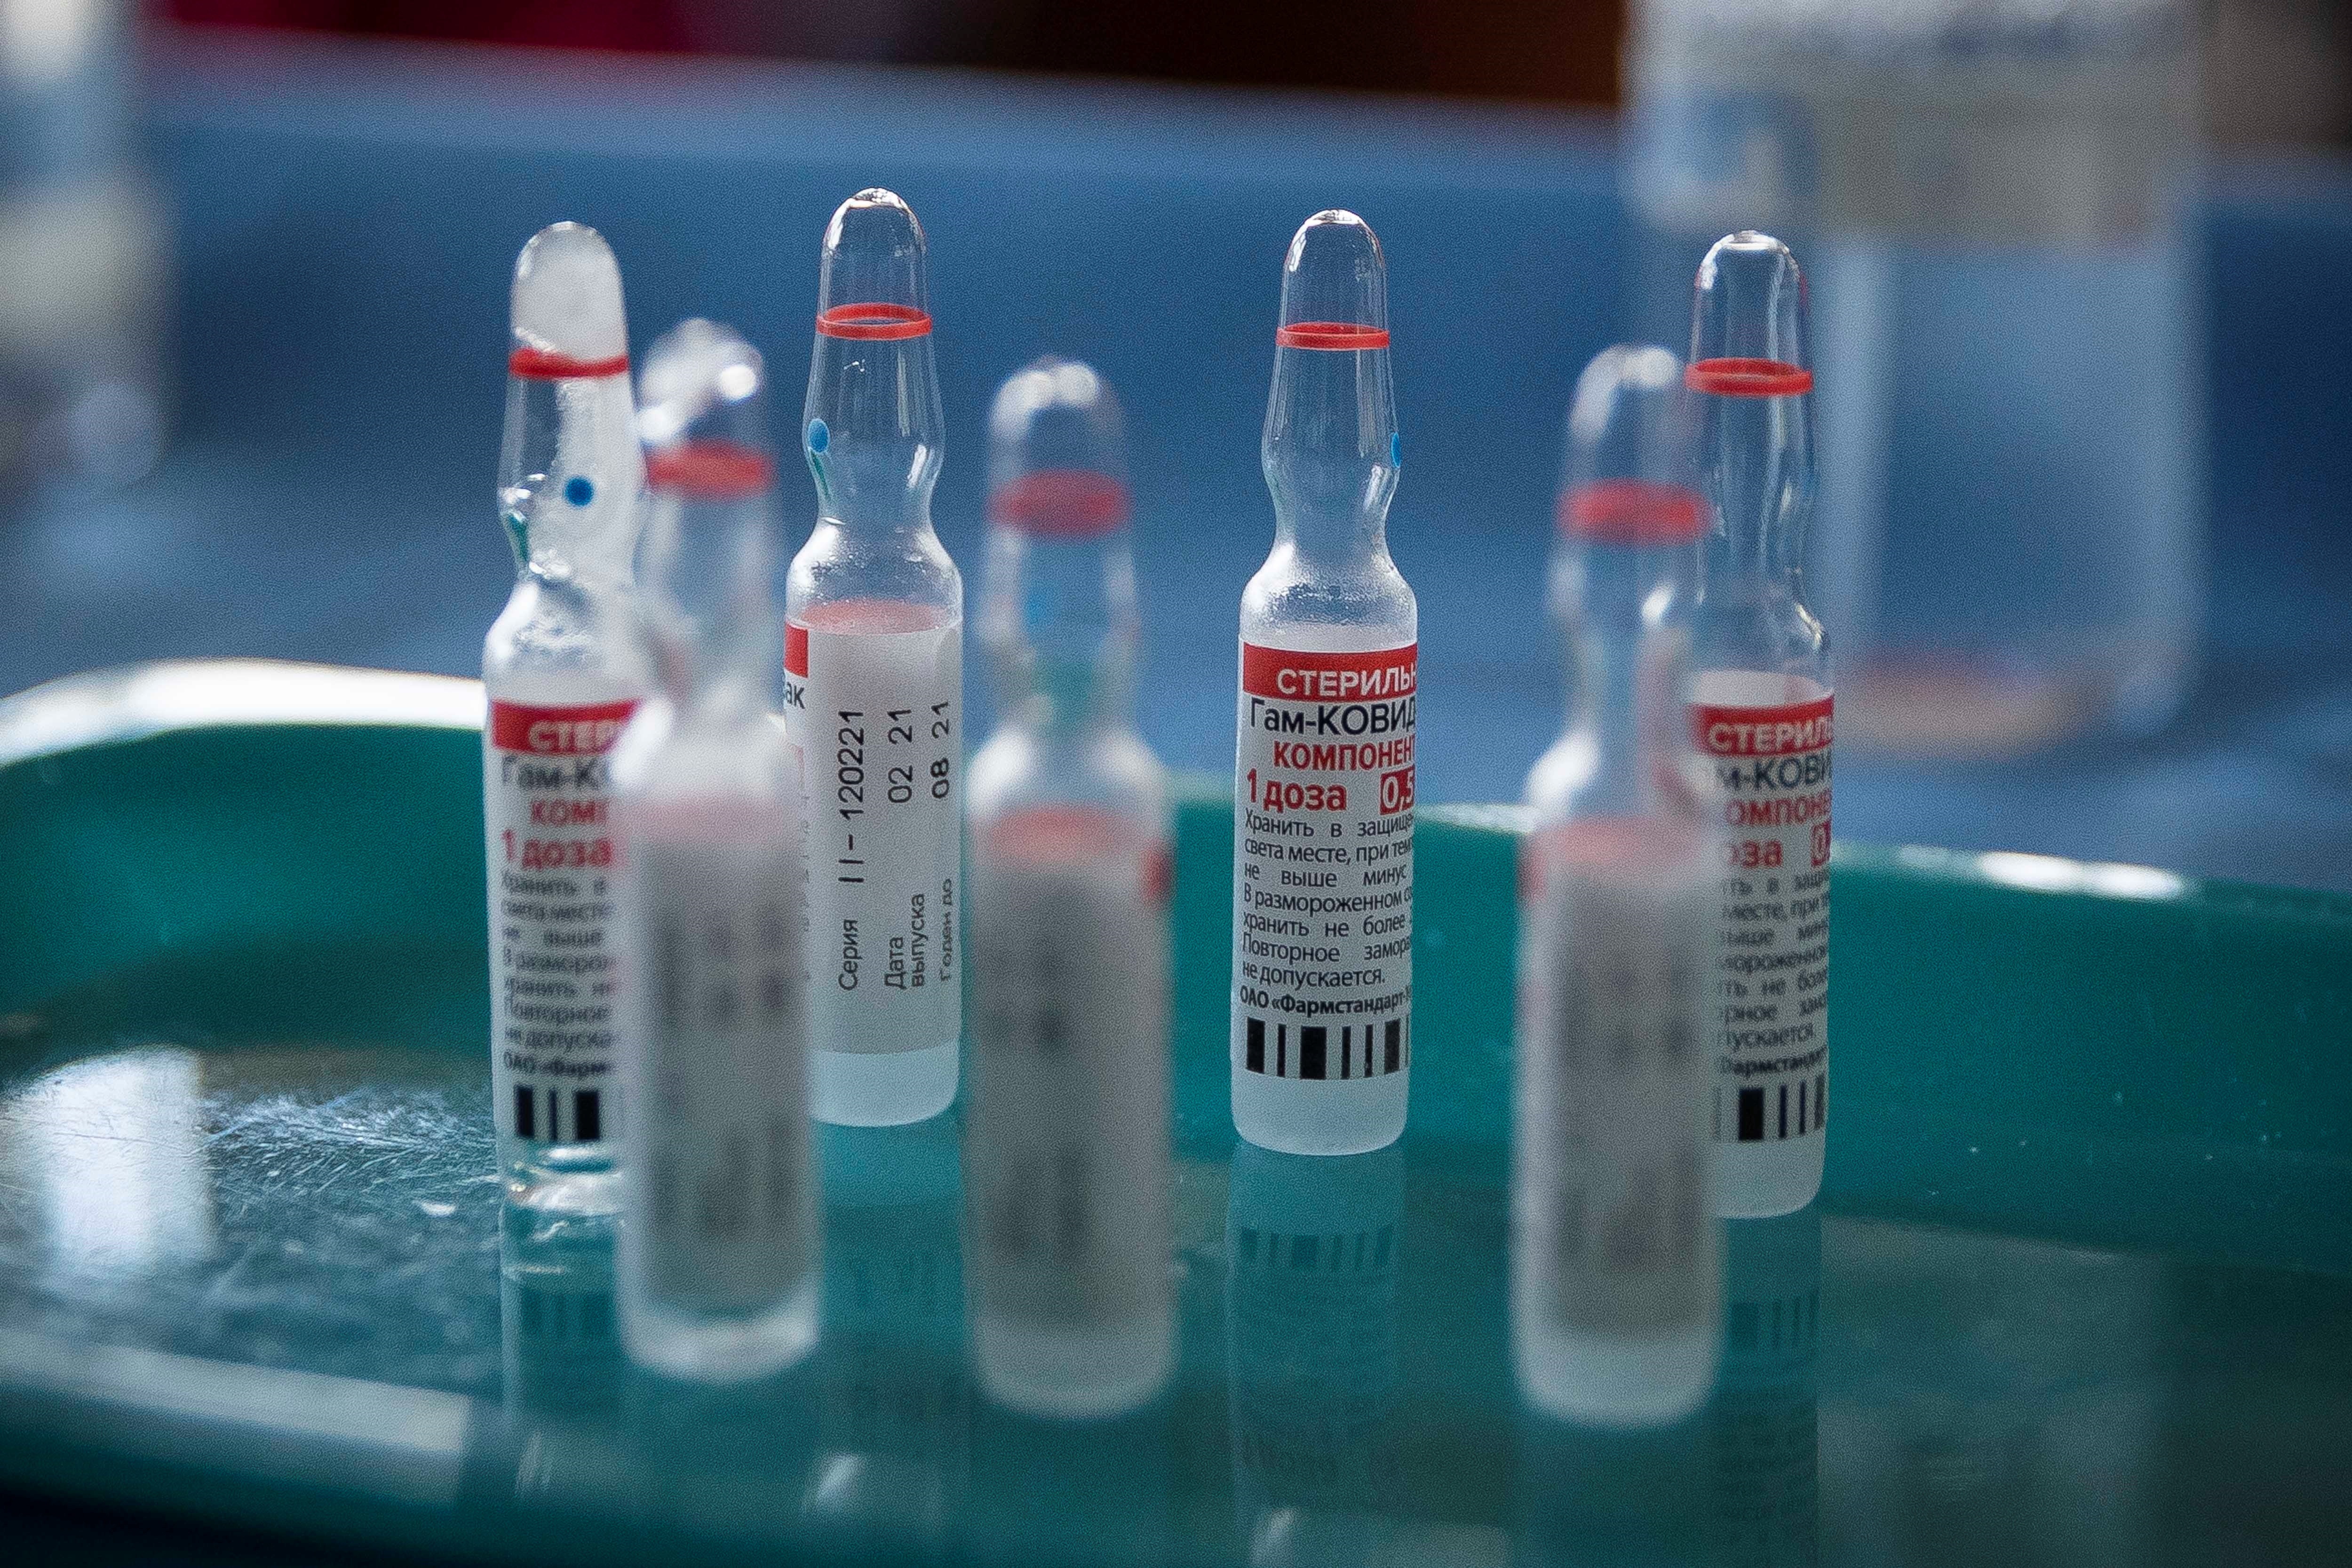 Costo de vacunas en centros privados, un duro golpe al bolsillo de los venezolanos